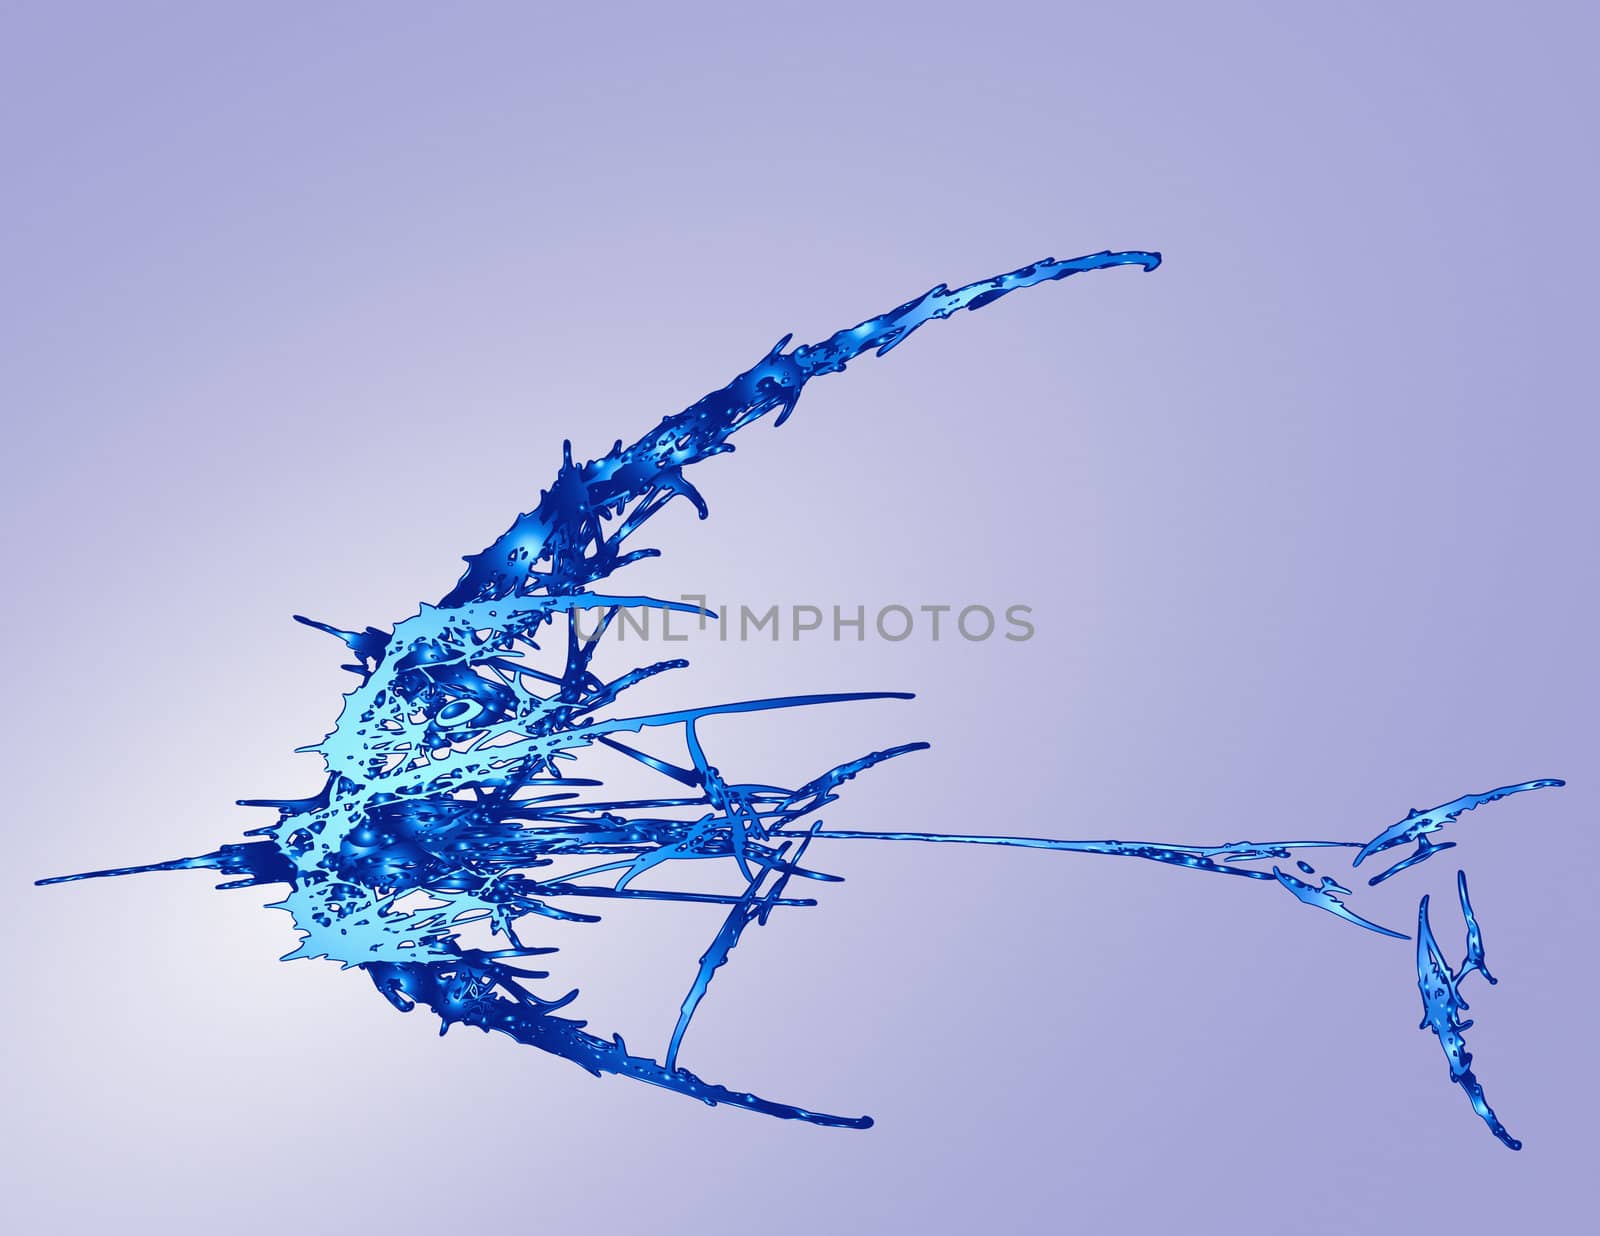 Mystic Fish in ocean deepness. Abstract fantasy illustration.